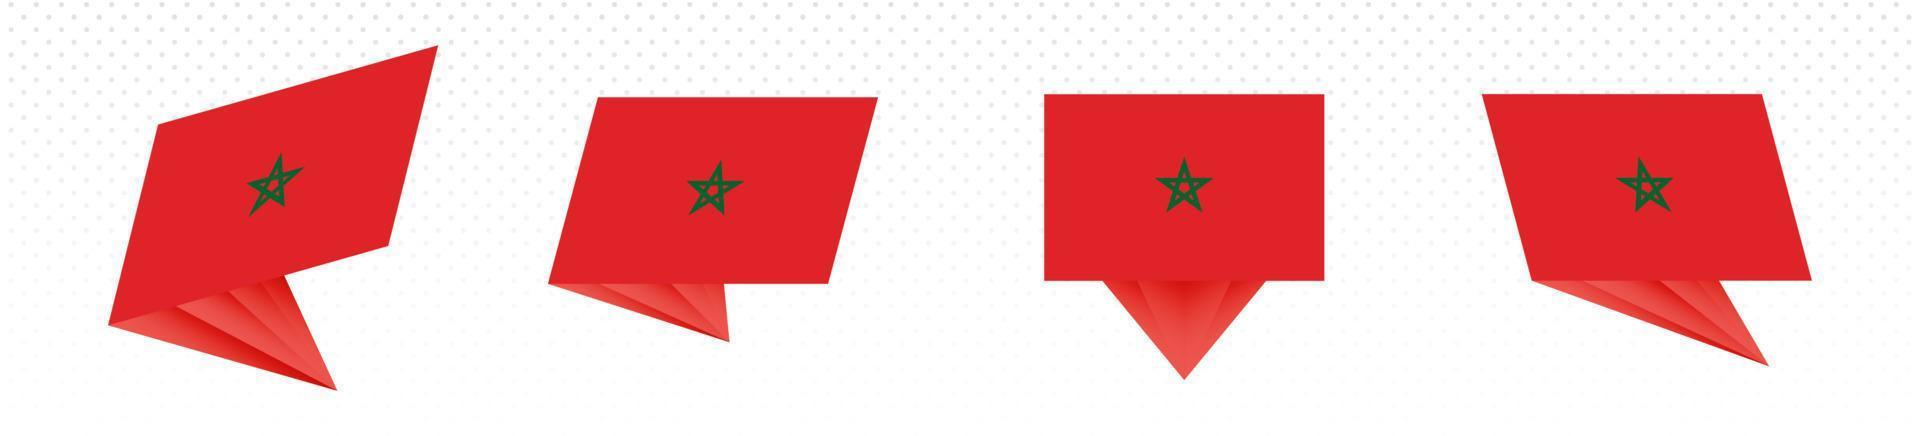 drapeau du maroc au design abstrait moderne, ensemble de drapeaux. vecteur